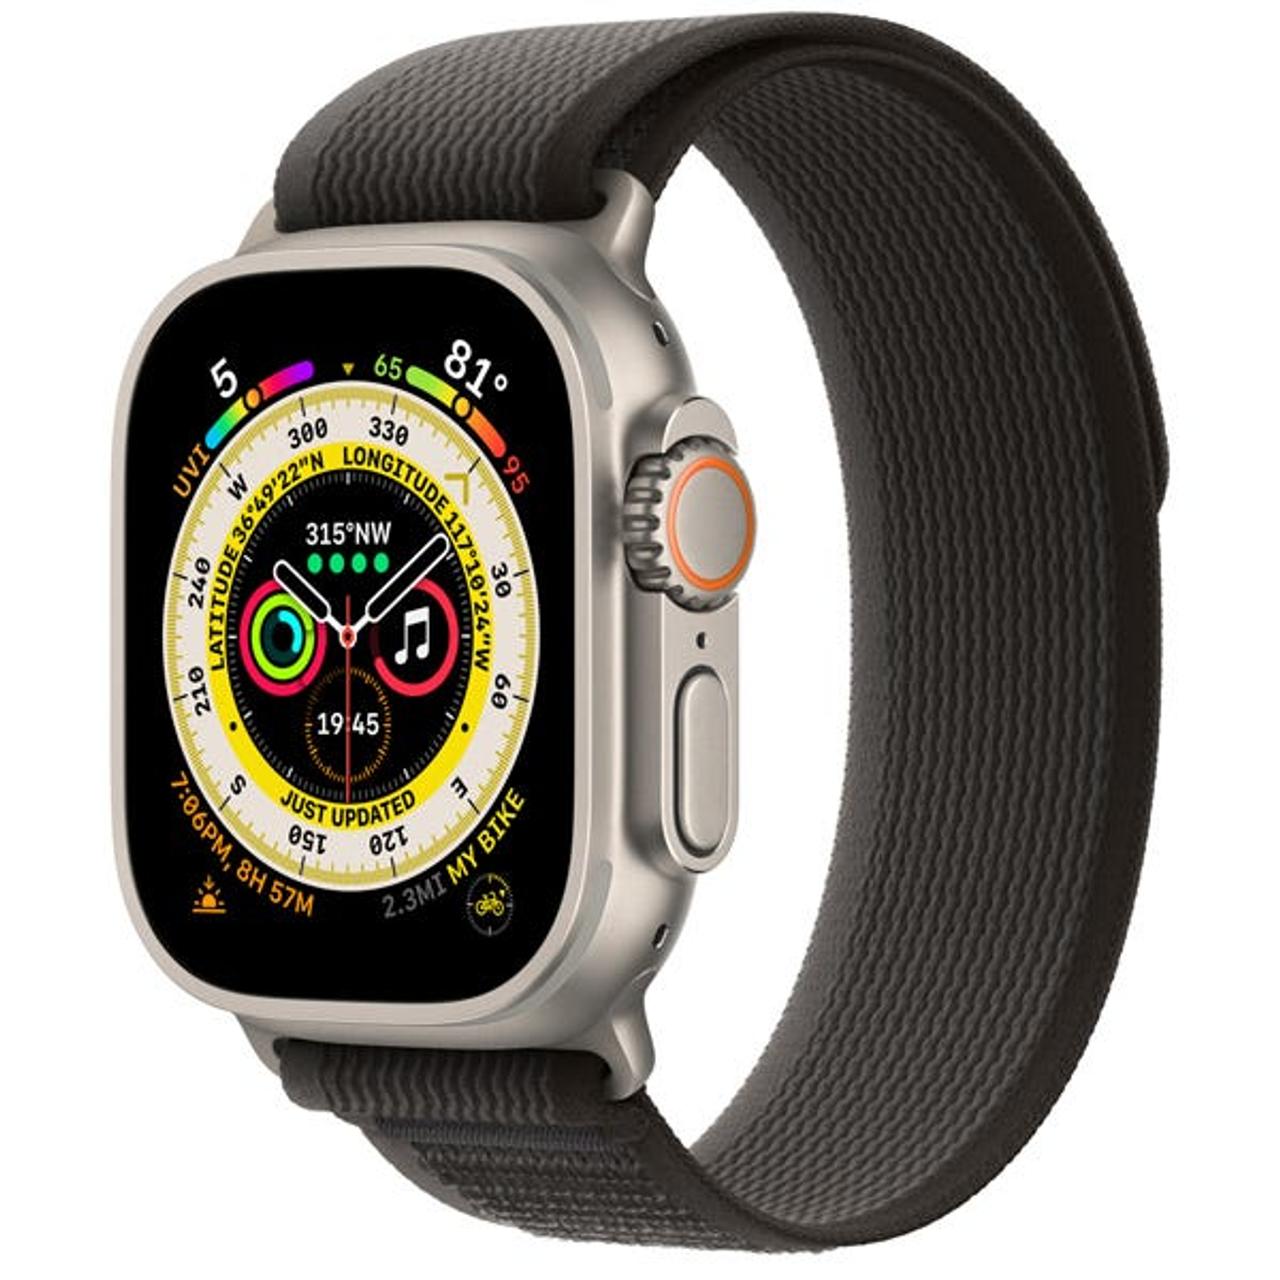 アップルは、Watch Xと呼ばれるApple Watchの新モデルを開発中。写真はシリーズ8。